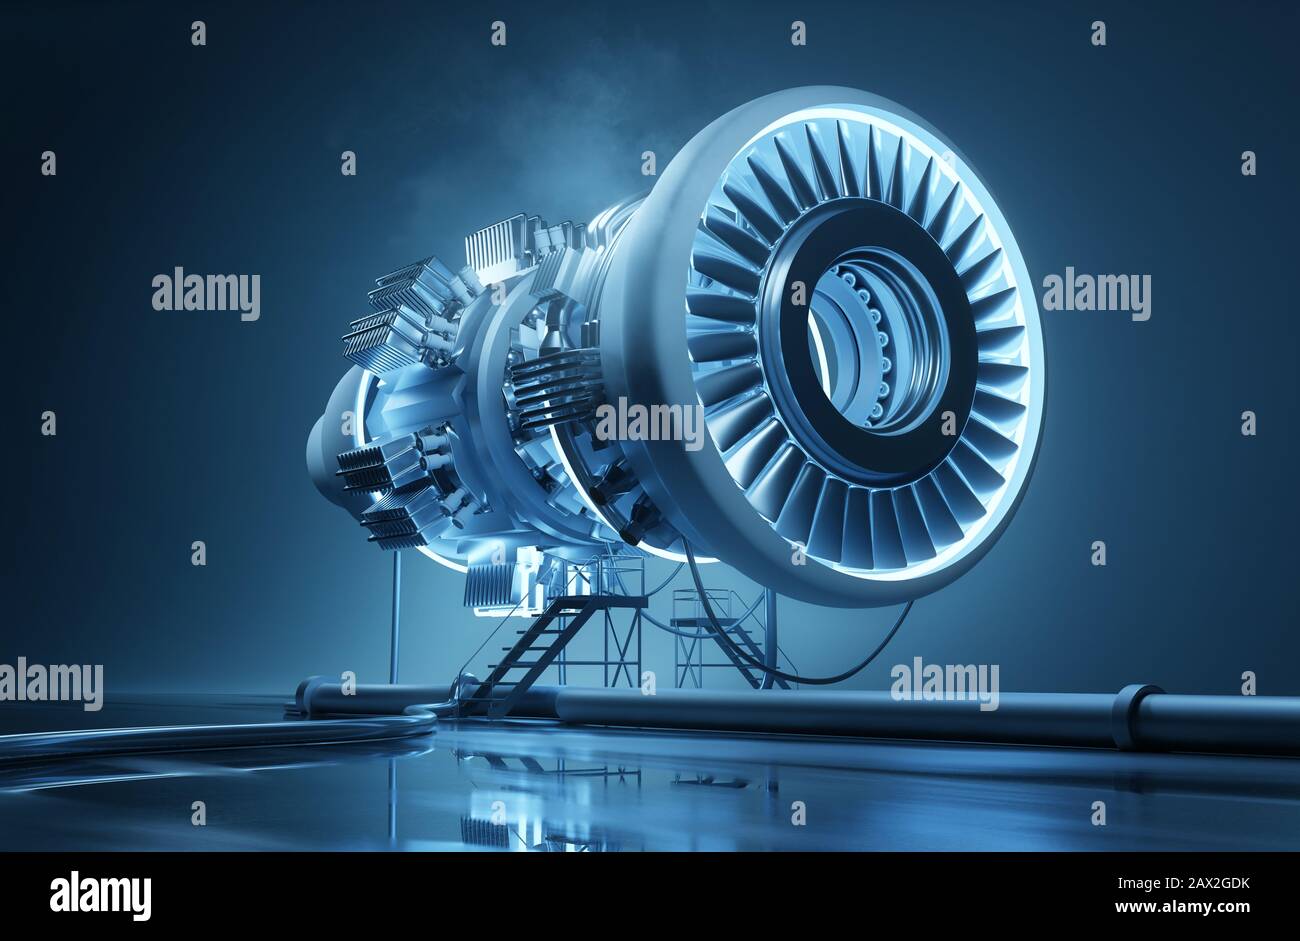 Un concept futuriste d'ingénierie et de fabrication avec un jet suspendu enging en cours de construction. Illustration tridimensionnelle. Banque D'Images